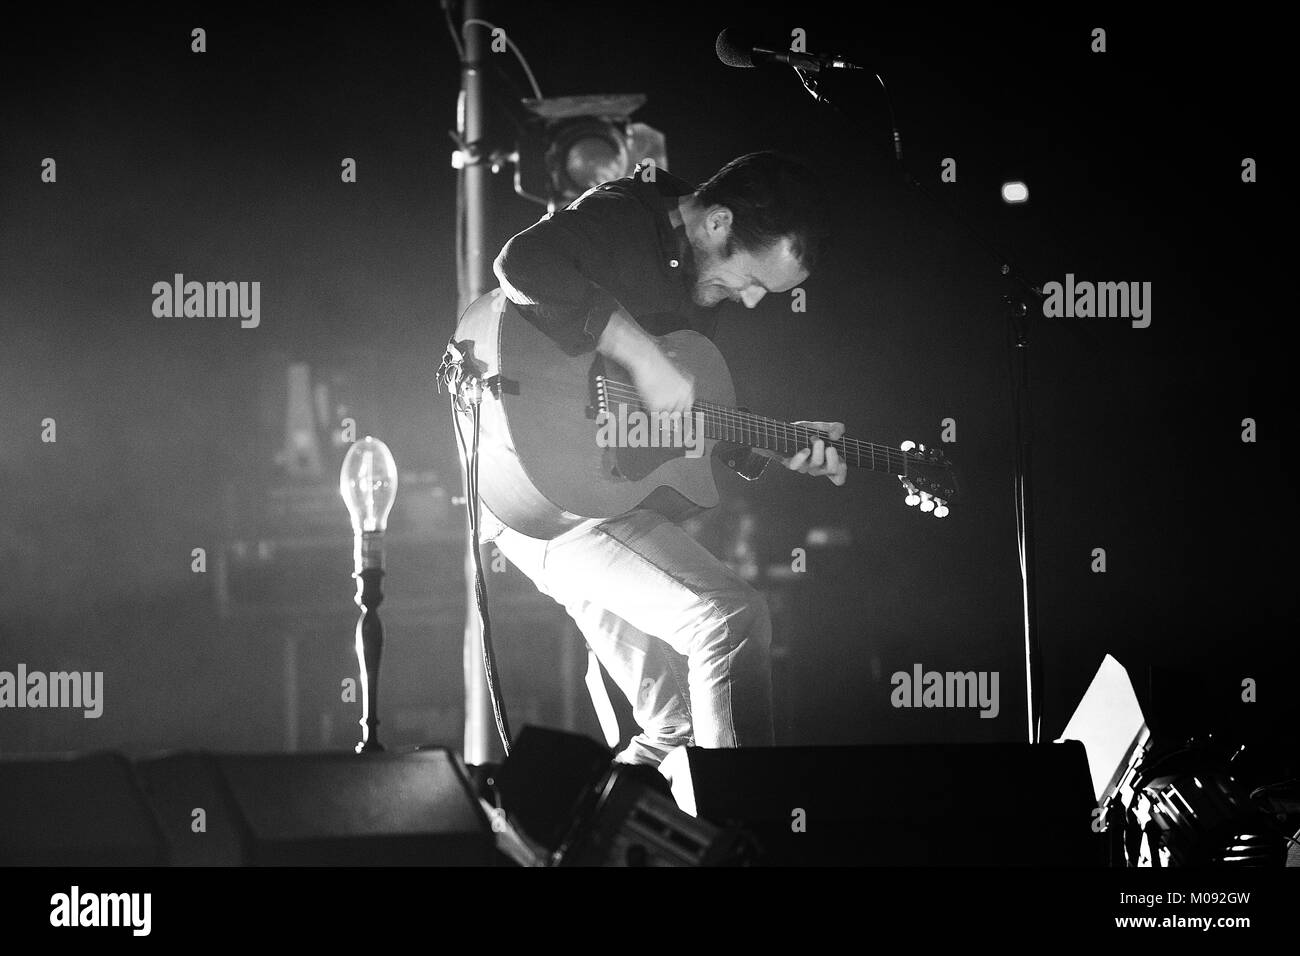 Il cantante irlandese, musicista e cantautore Damien Rice esegue un concerto dal vivo a Admiralpalast a Berlino. Germania, 31/10 2014. Foto Stock